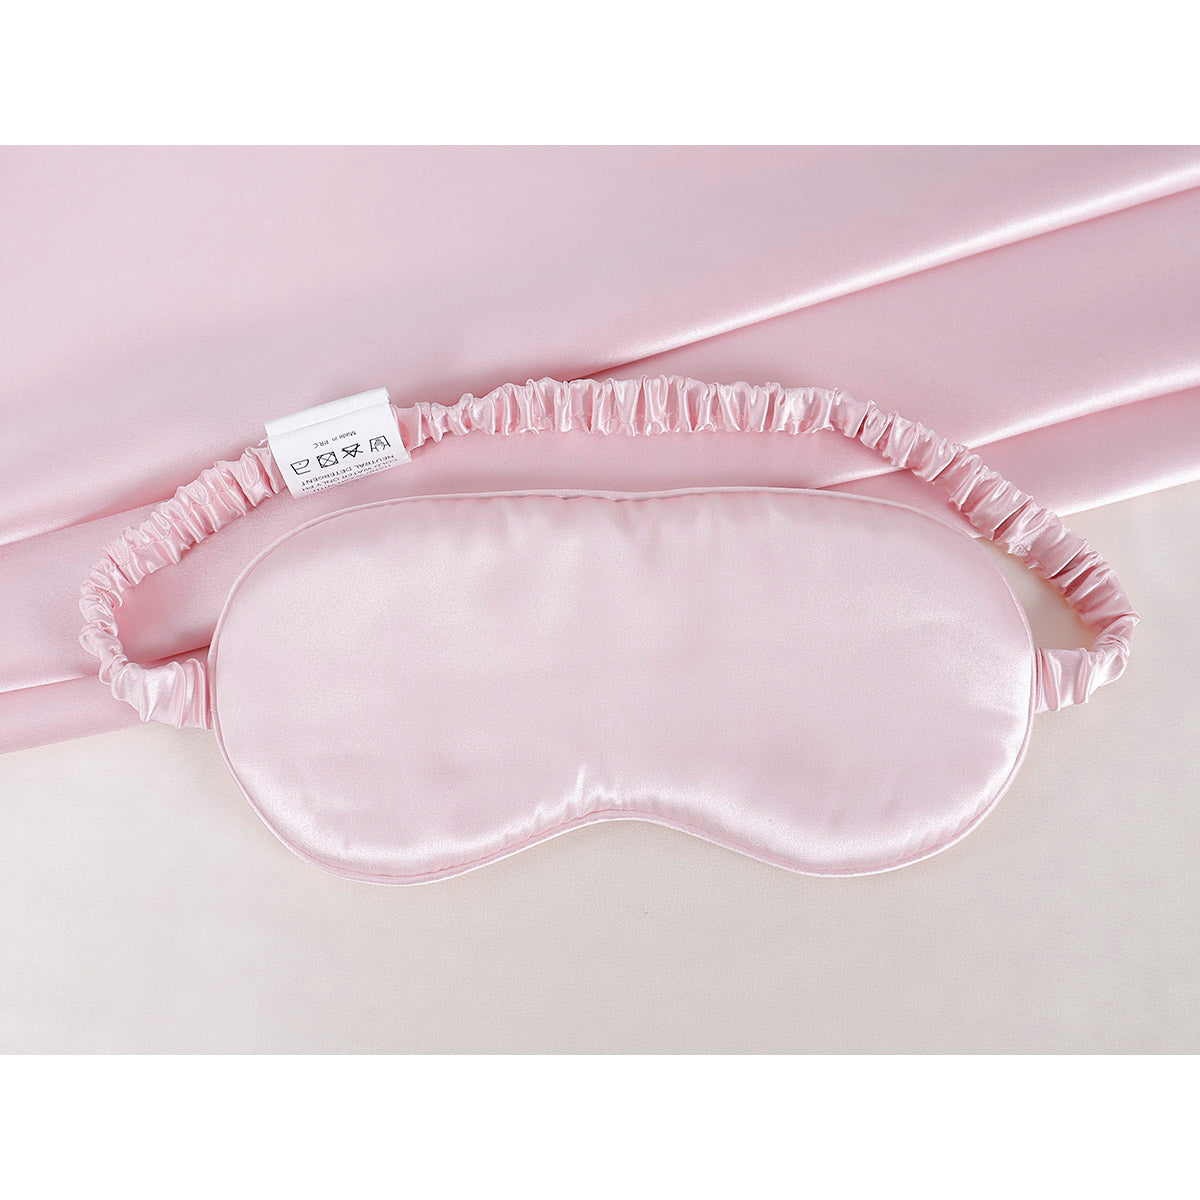 Μεταξωτή μάσκα ύπνου σε κουτί δώρου Art 12165 Ροζ Beauty Home Default Title από την εταιρεία Beauty Home